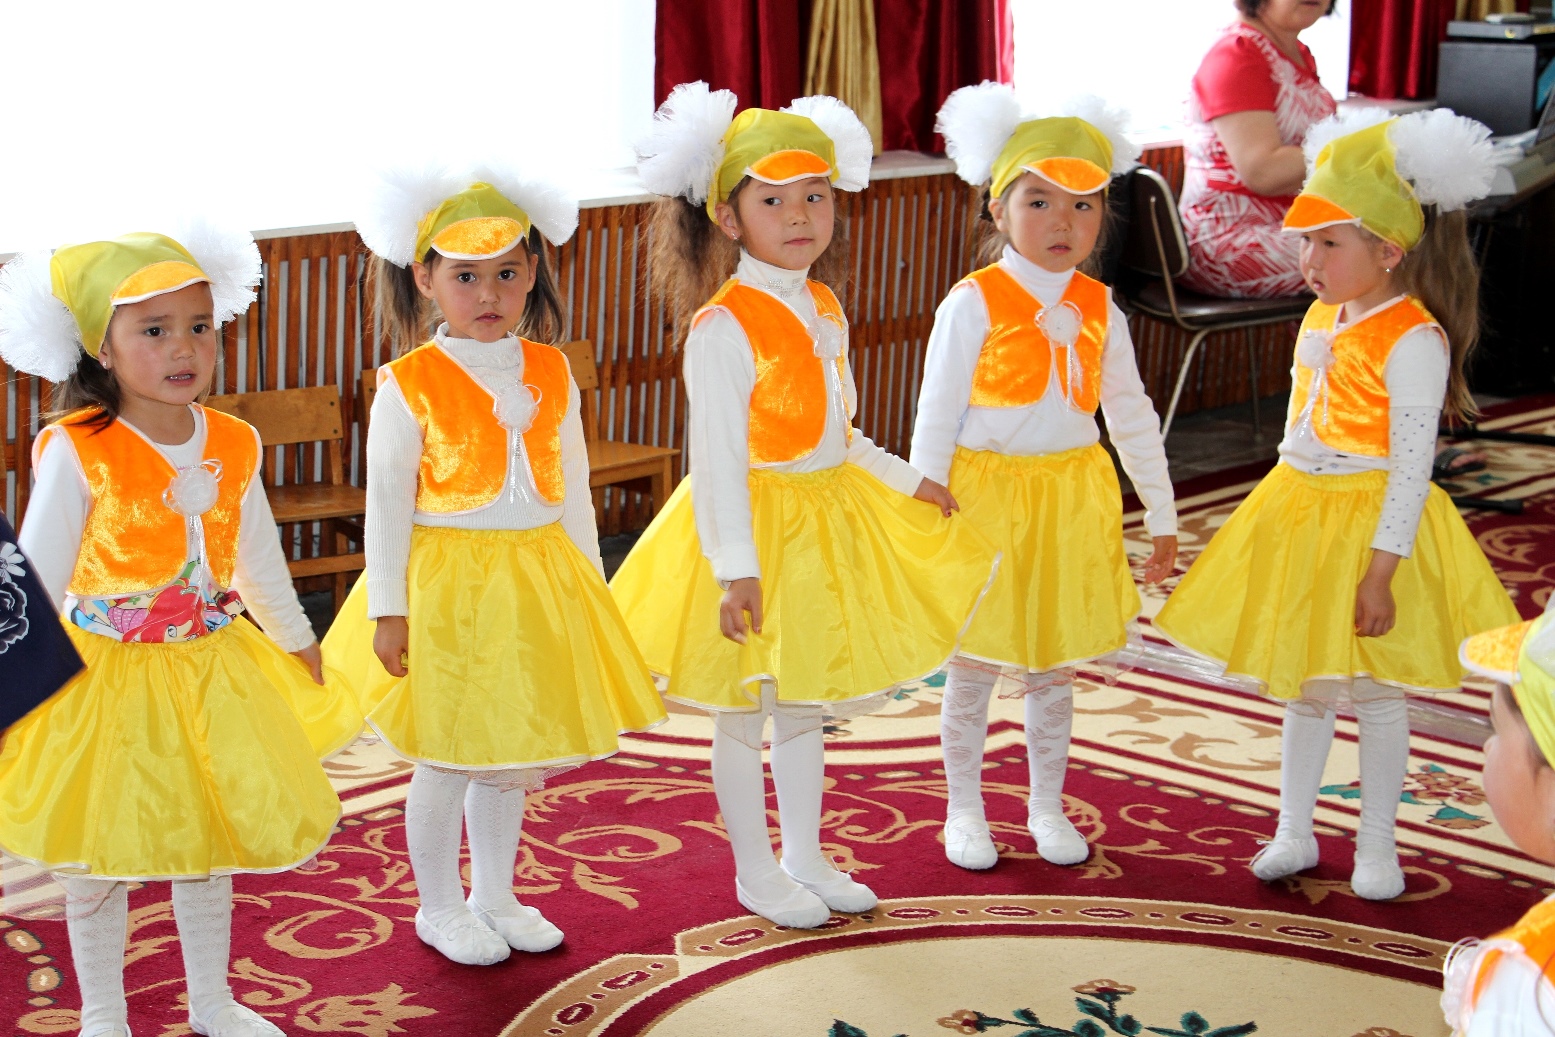 Cinque ragazze con un abito giallo per la festa di inaugurazione del nuovo asilo